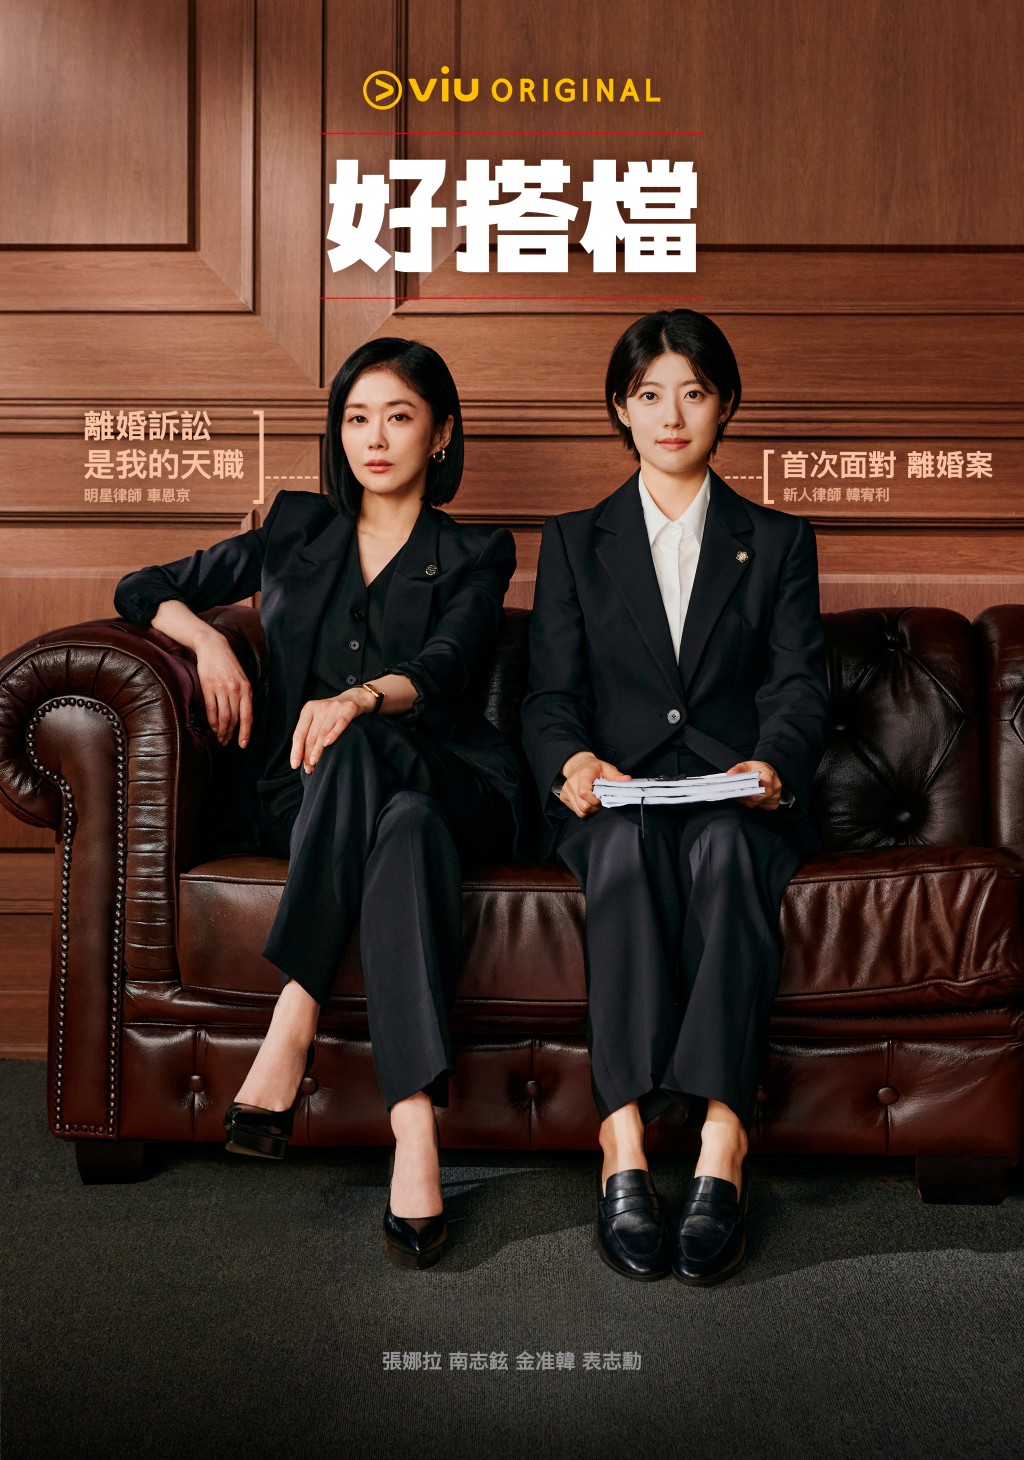 Viu Original原創律政職場韓劇《好搭檔》將於周末登陸「黃Viu煲劇平台」。